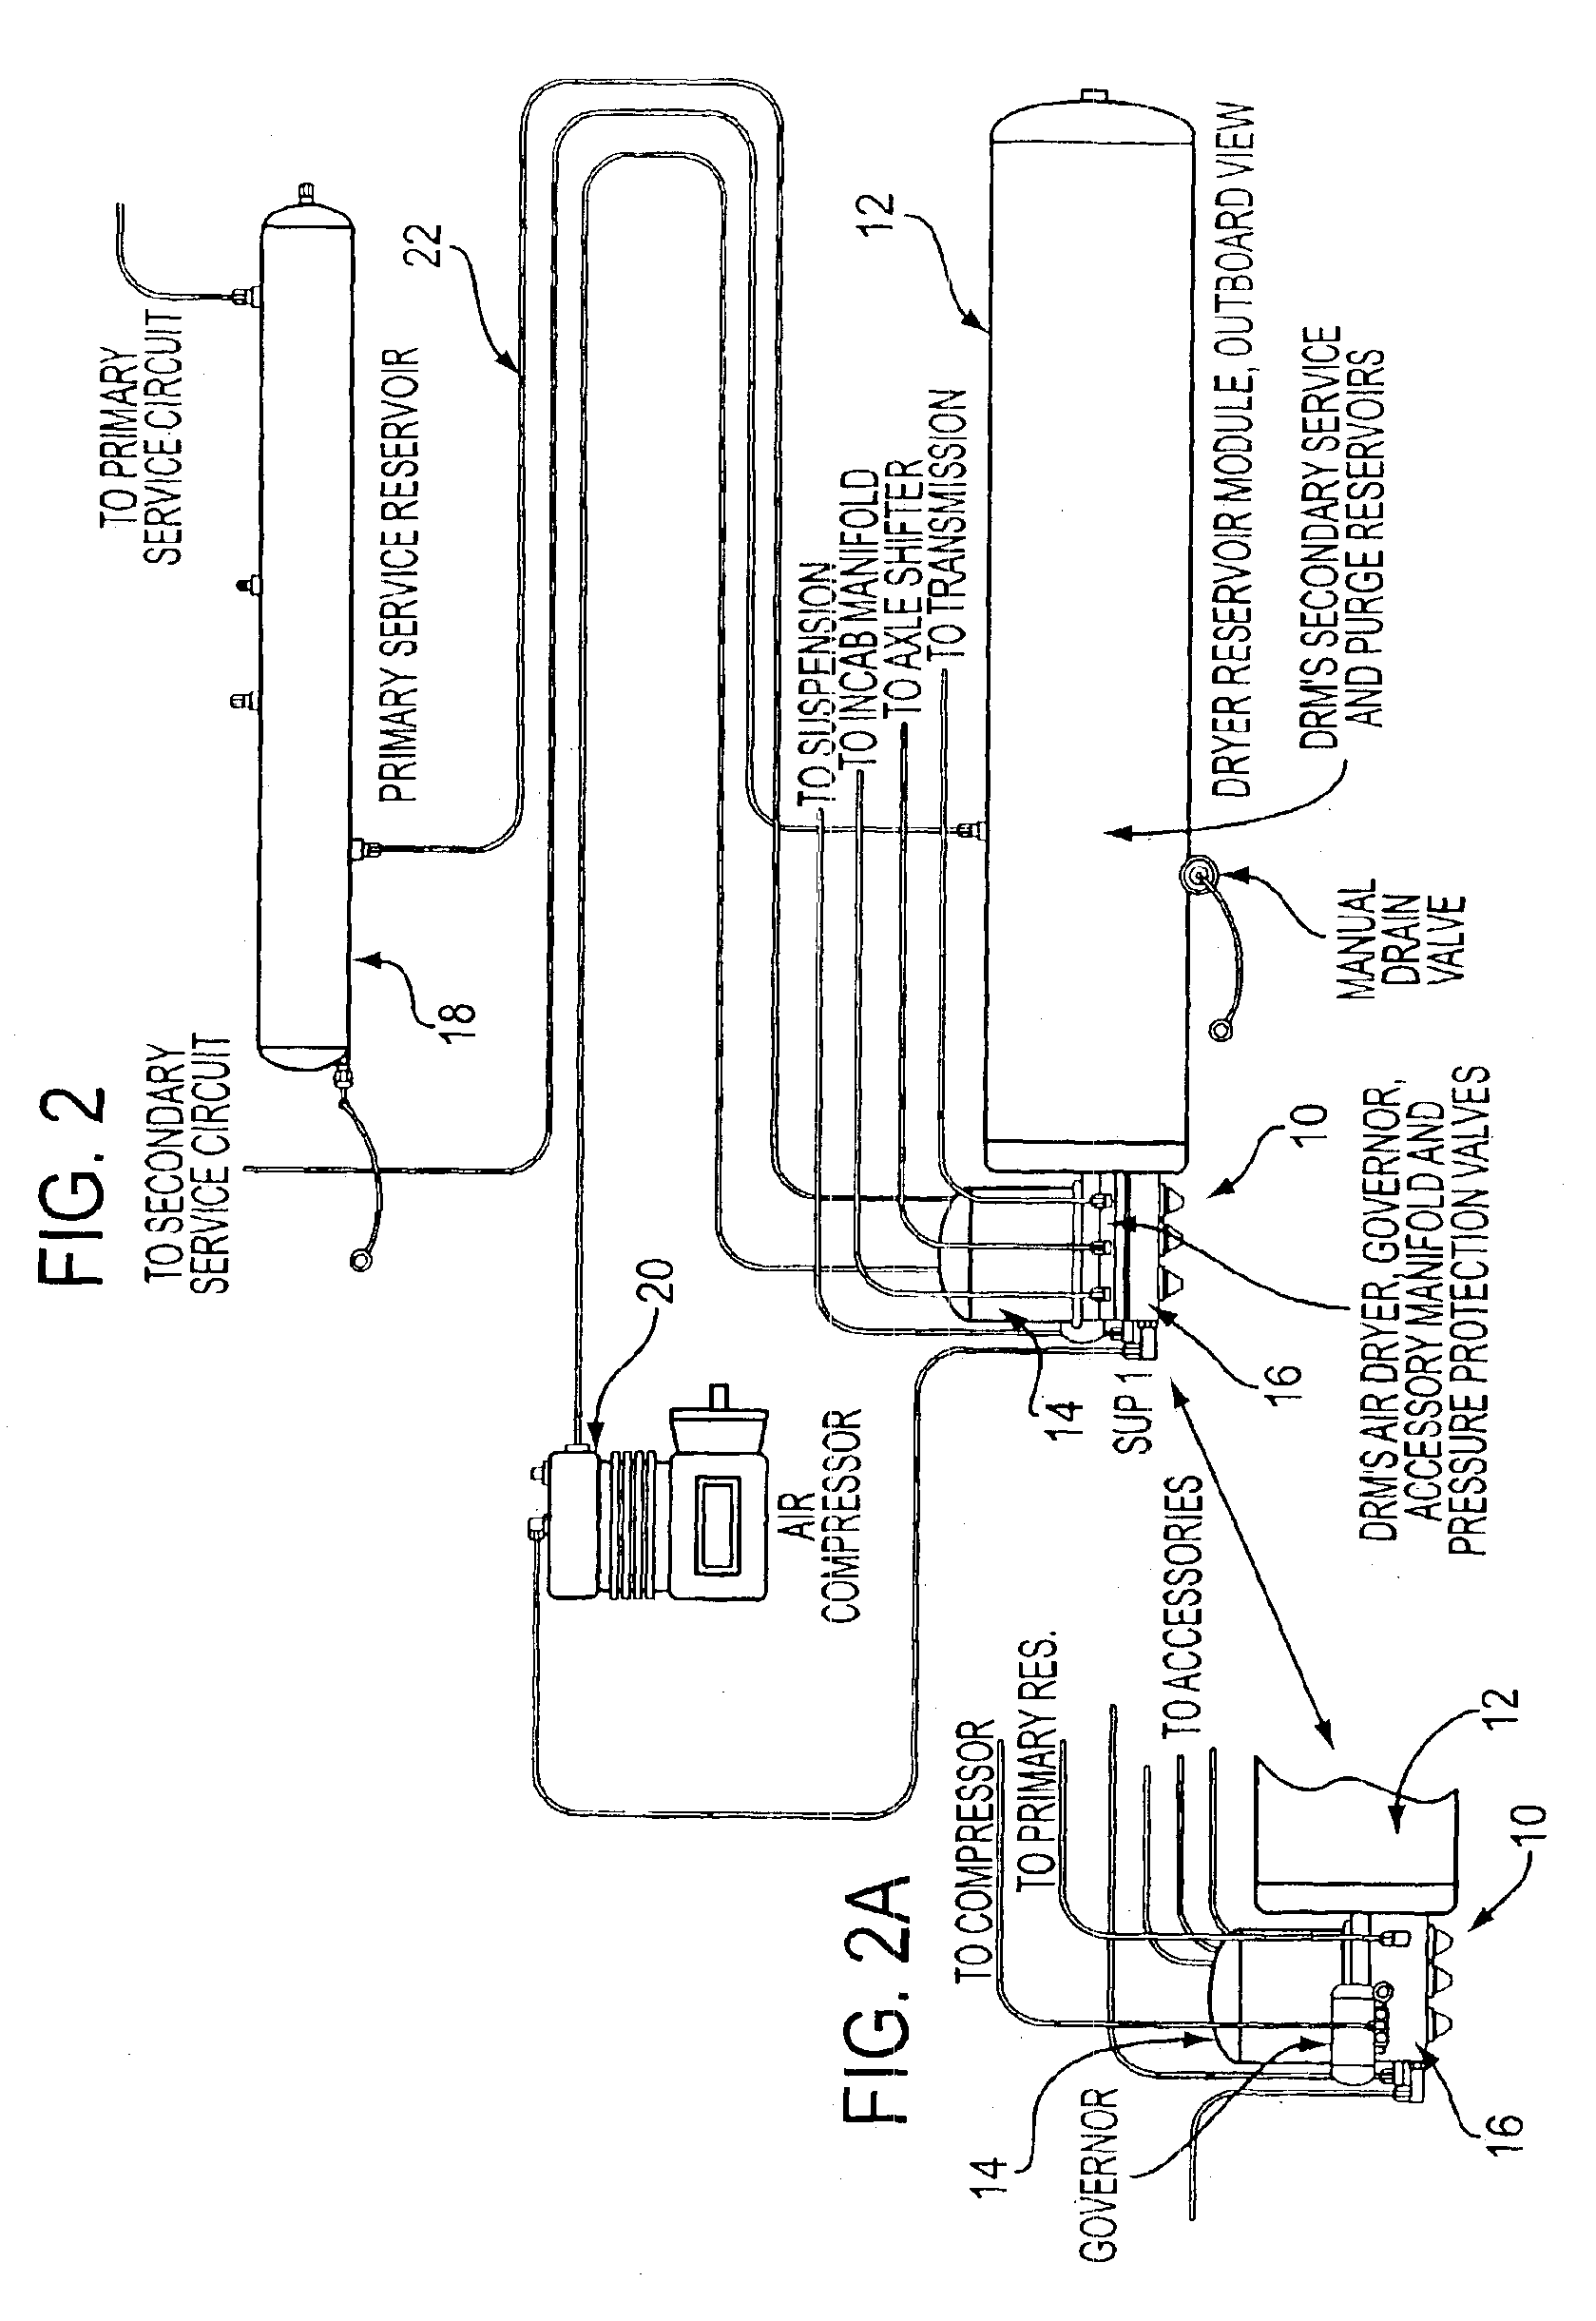 Air dryer module